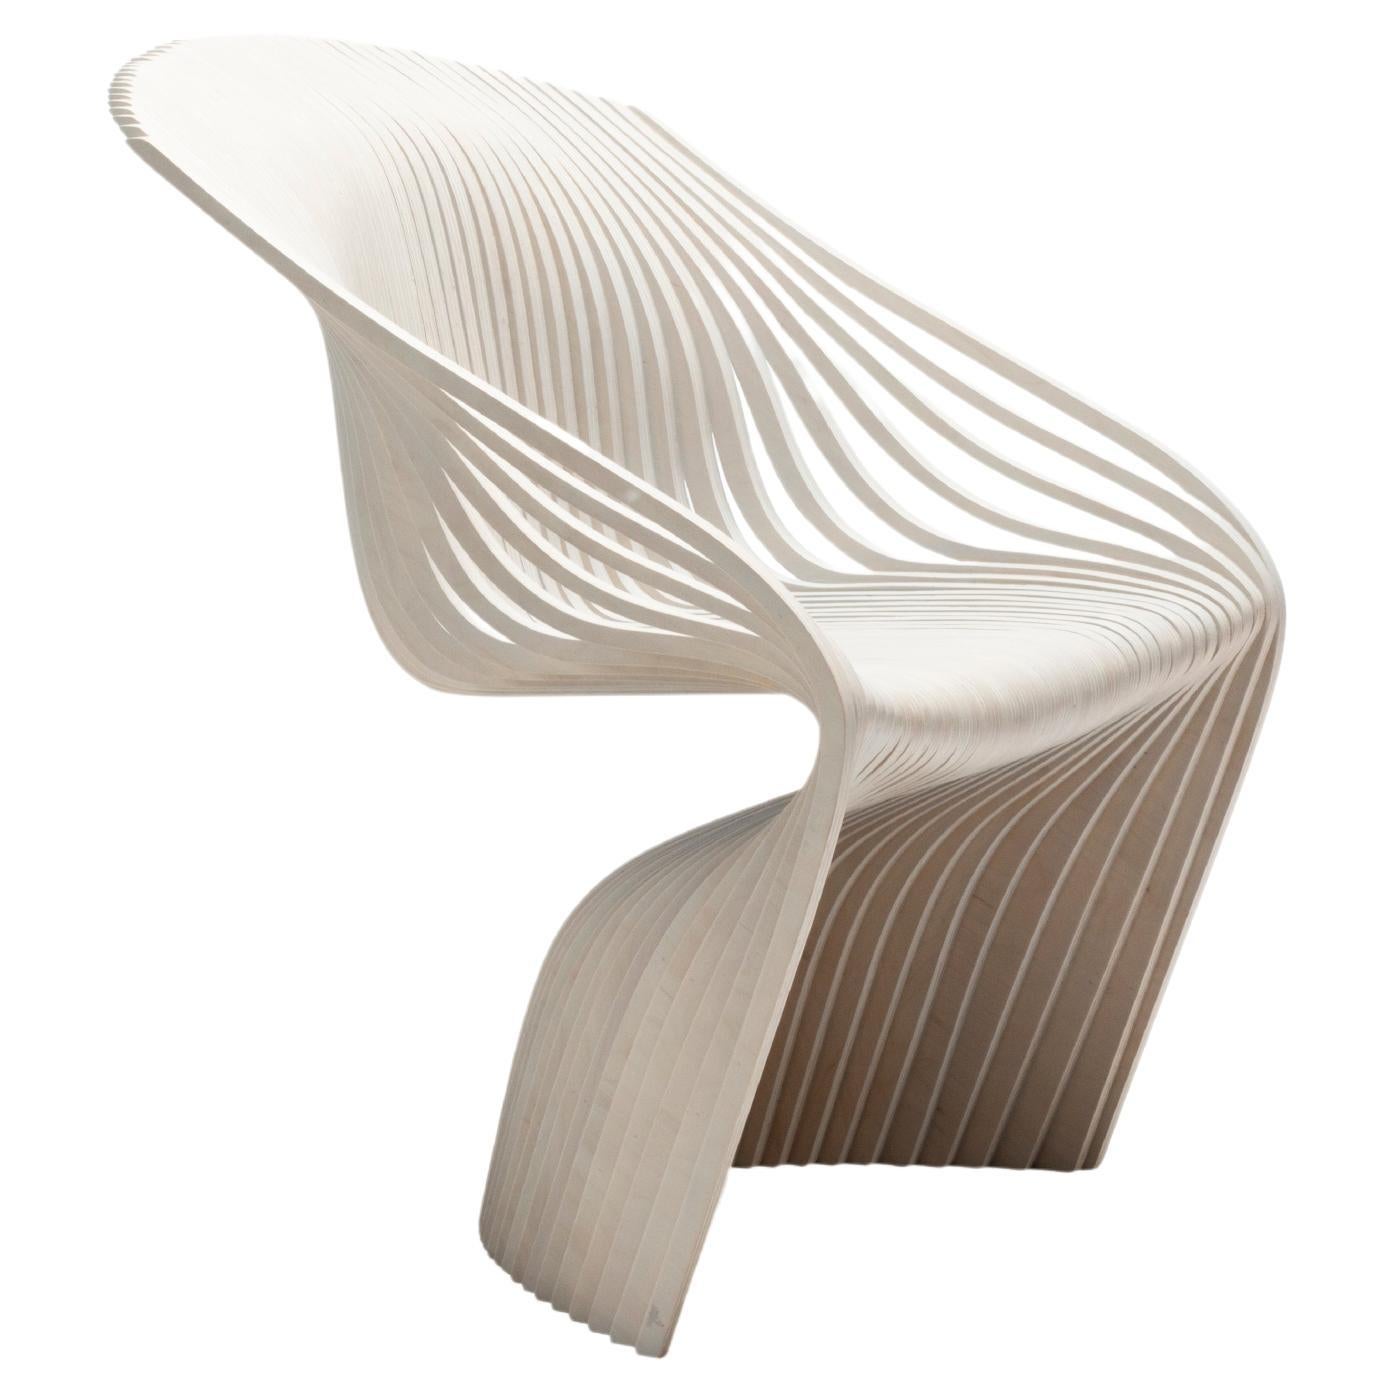 Aida Chair by Piegatto, a Sculptural Contemporary Chair 